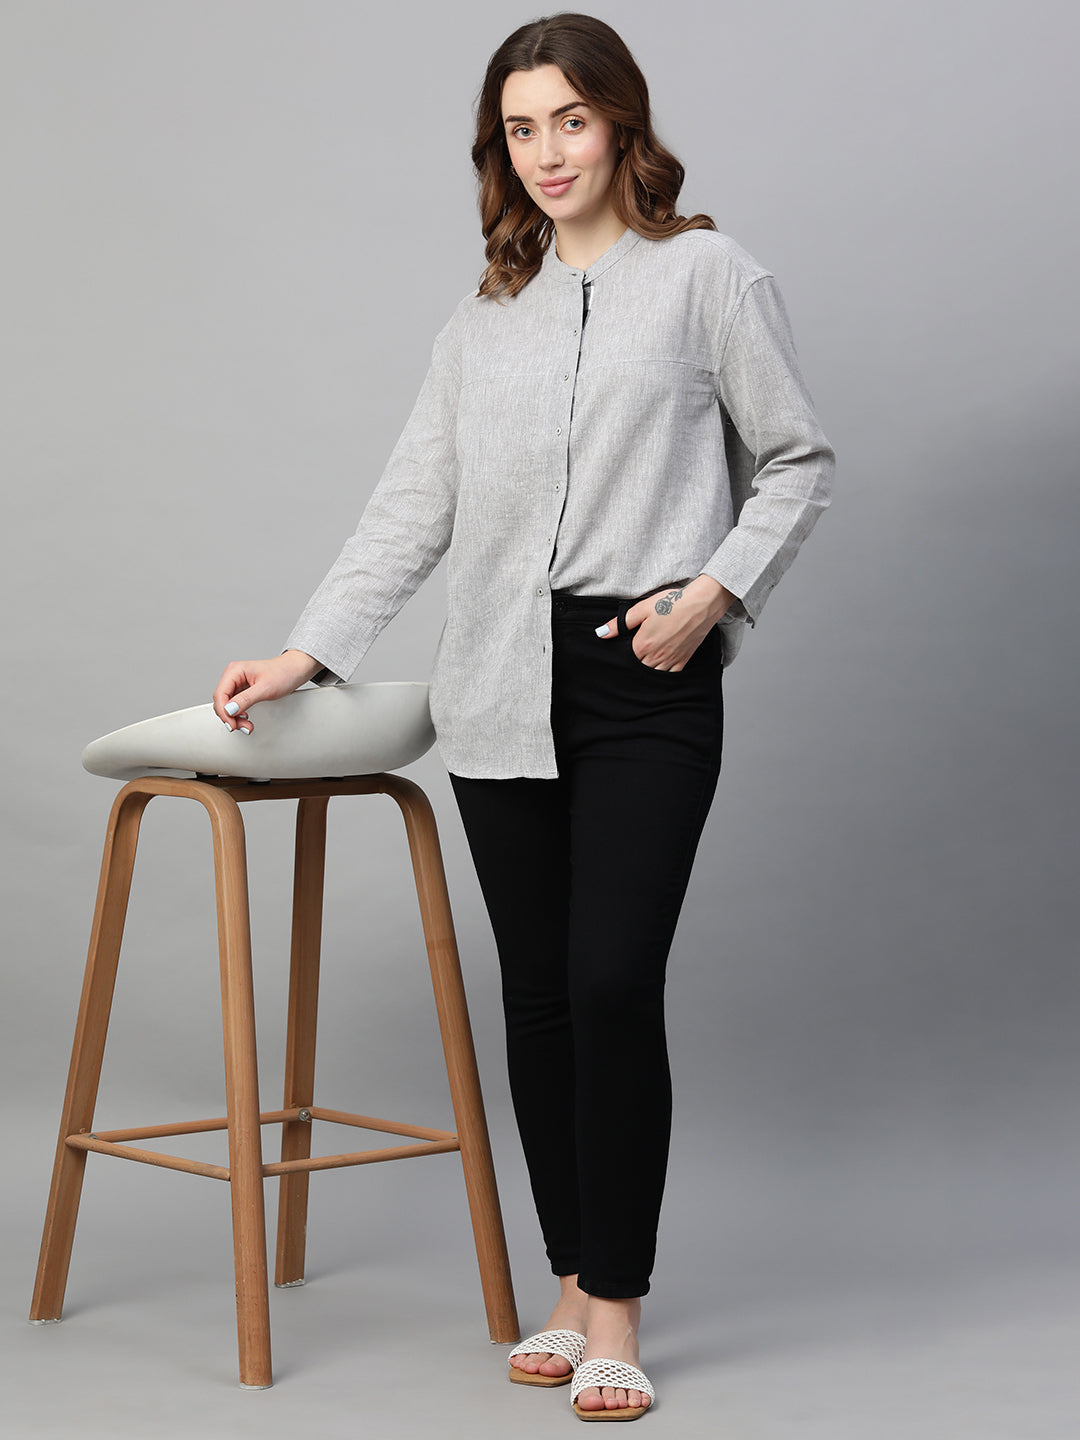 Women's Grey Cotton Linen Regular Fit Blouse